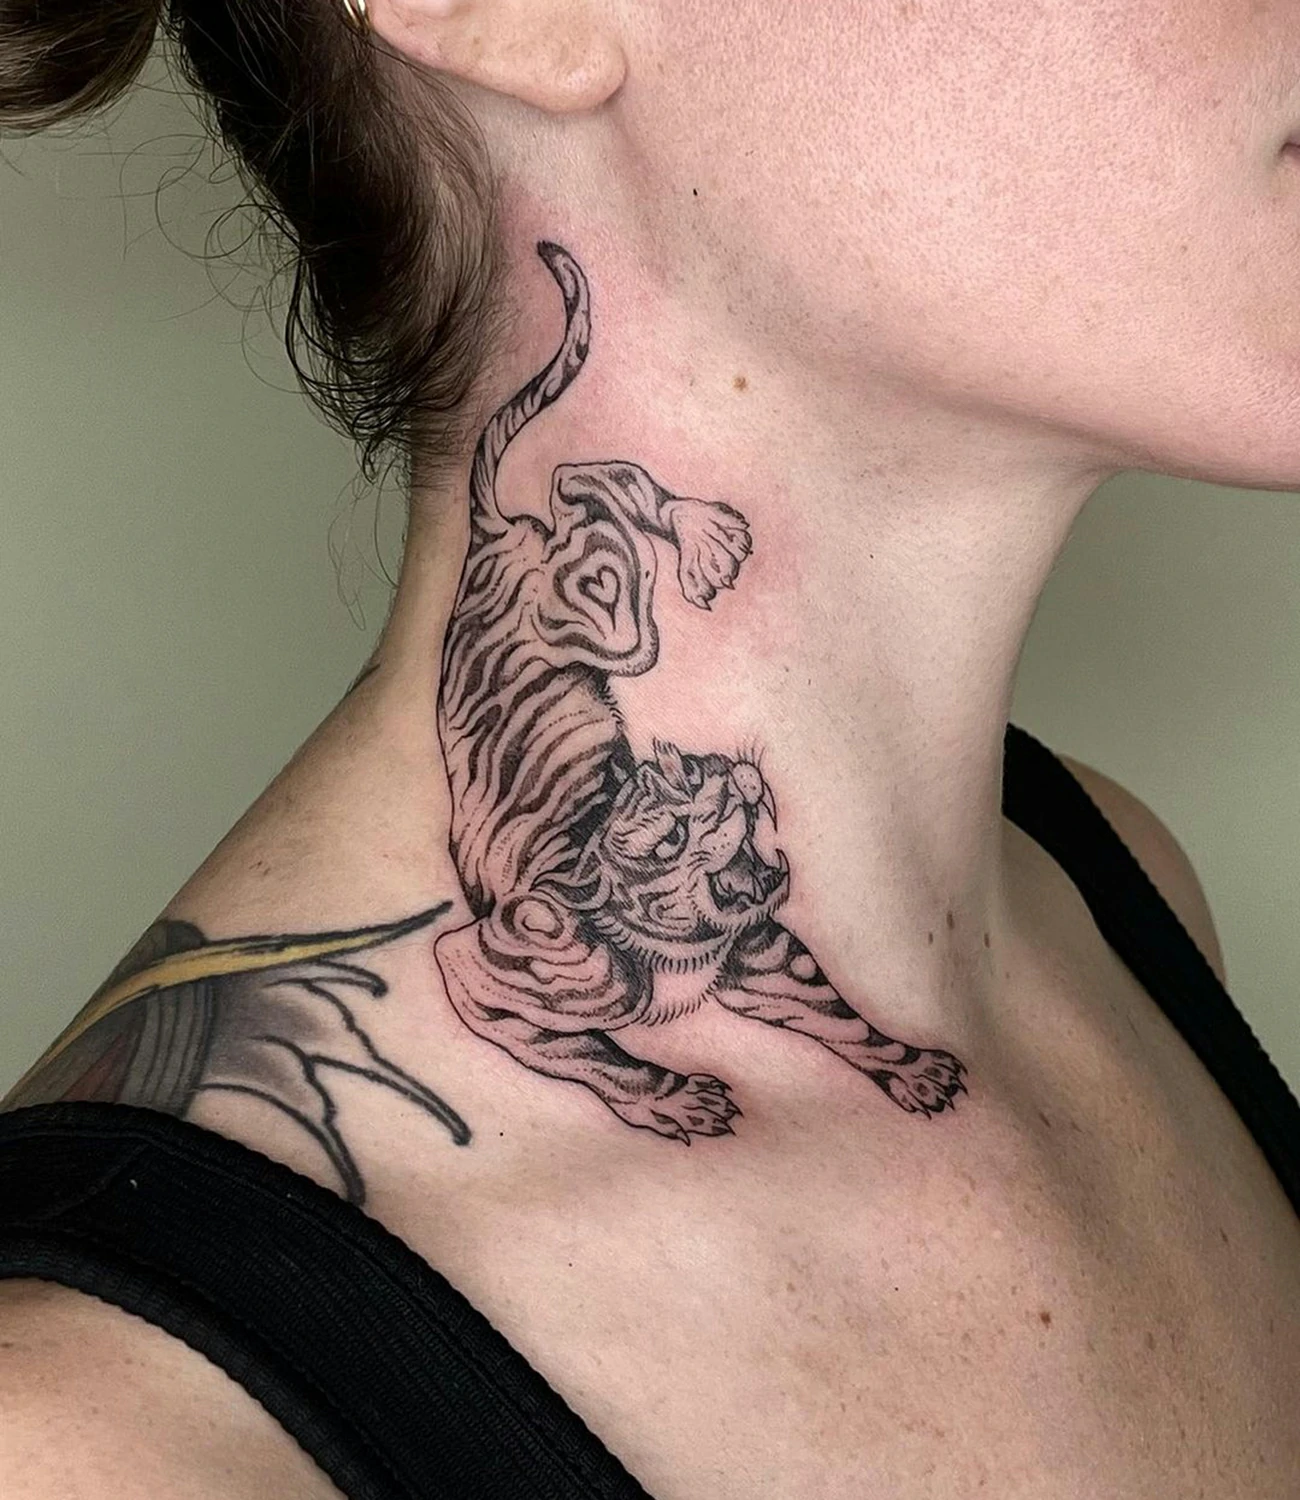 Tiger Neck Tattoo